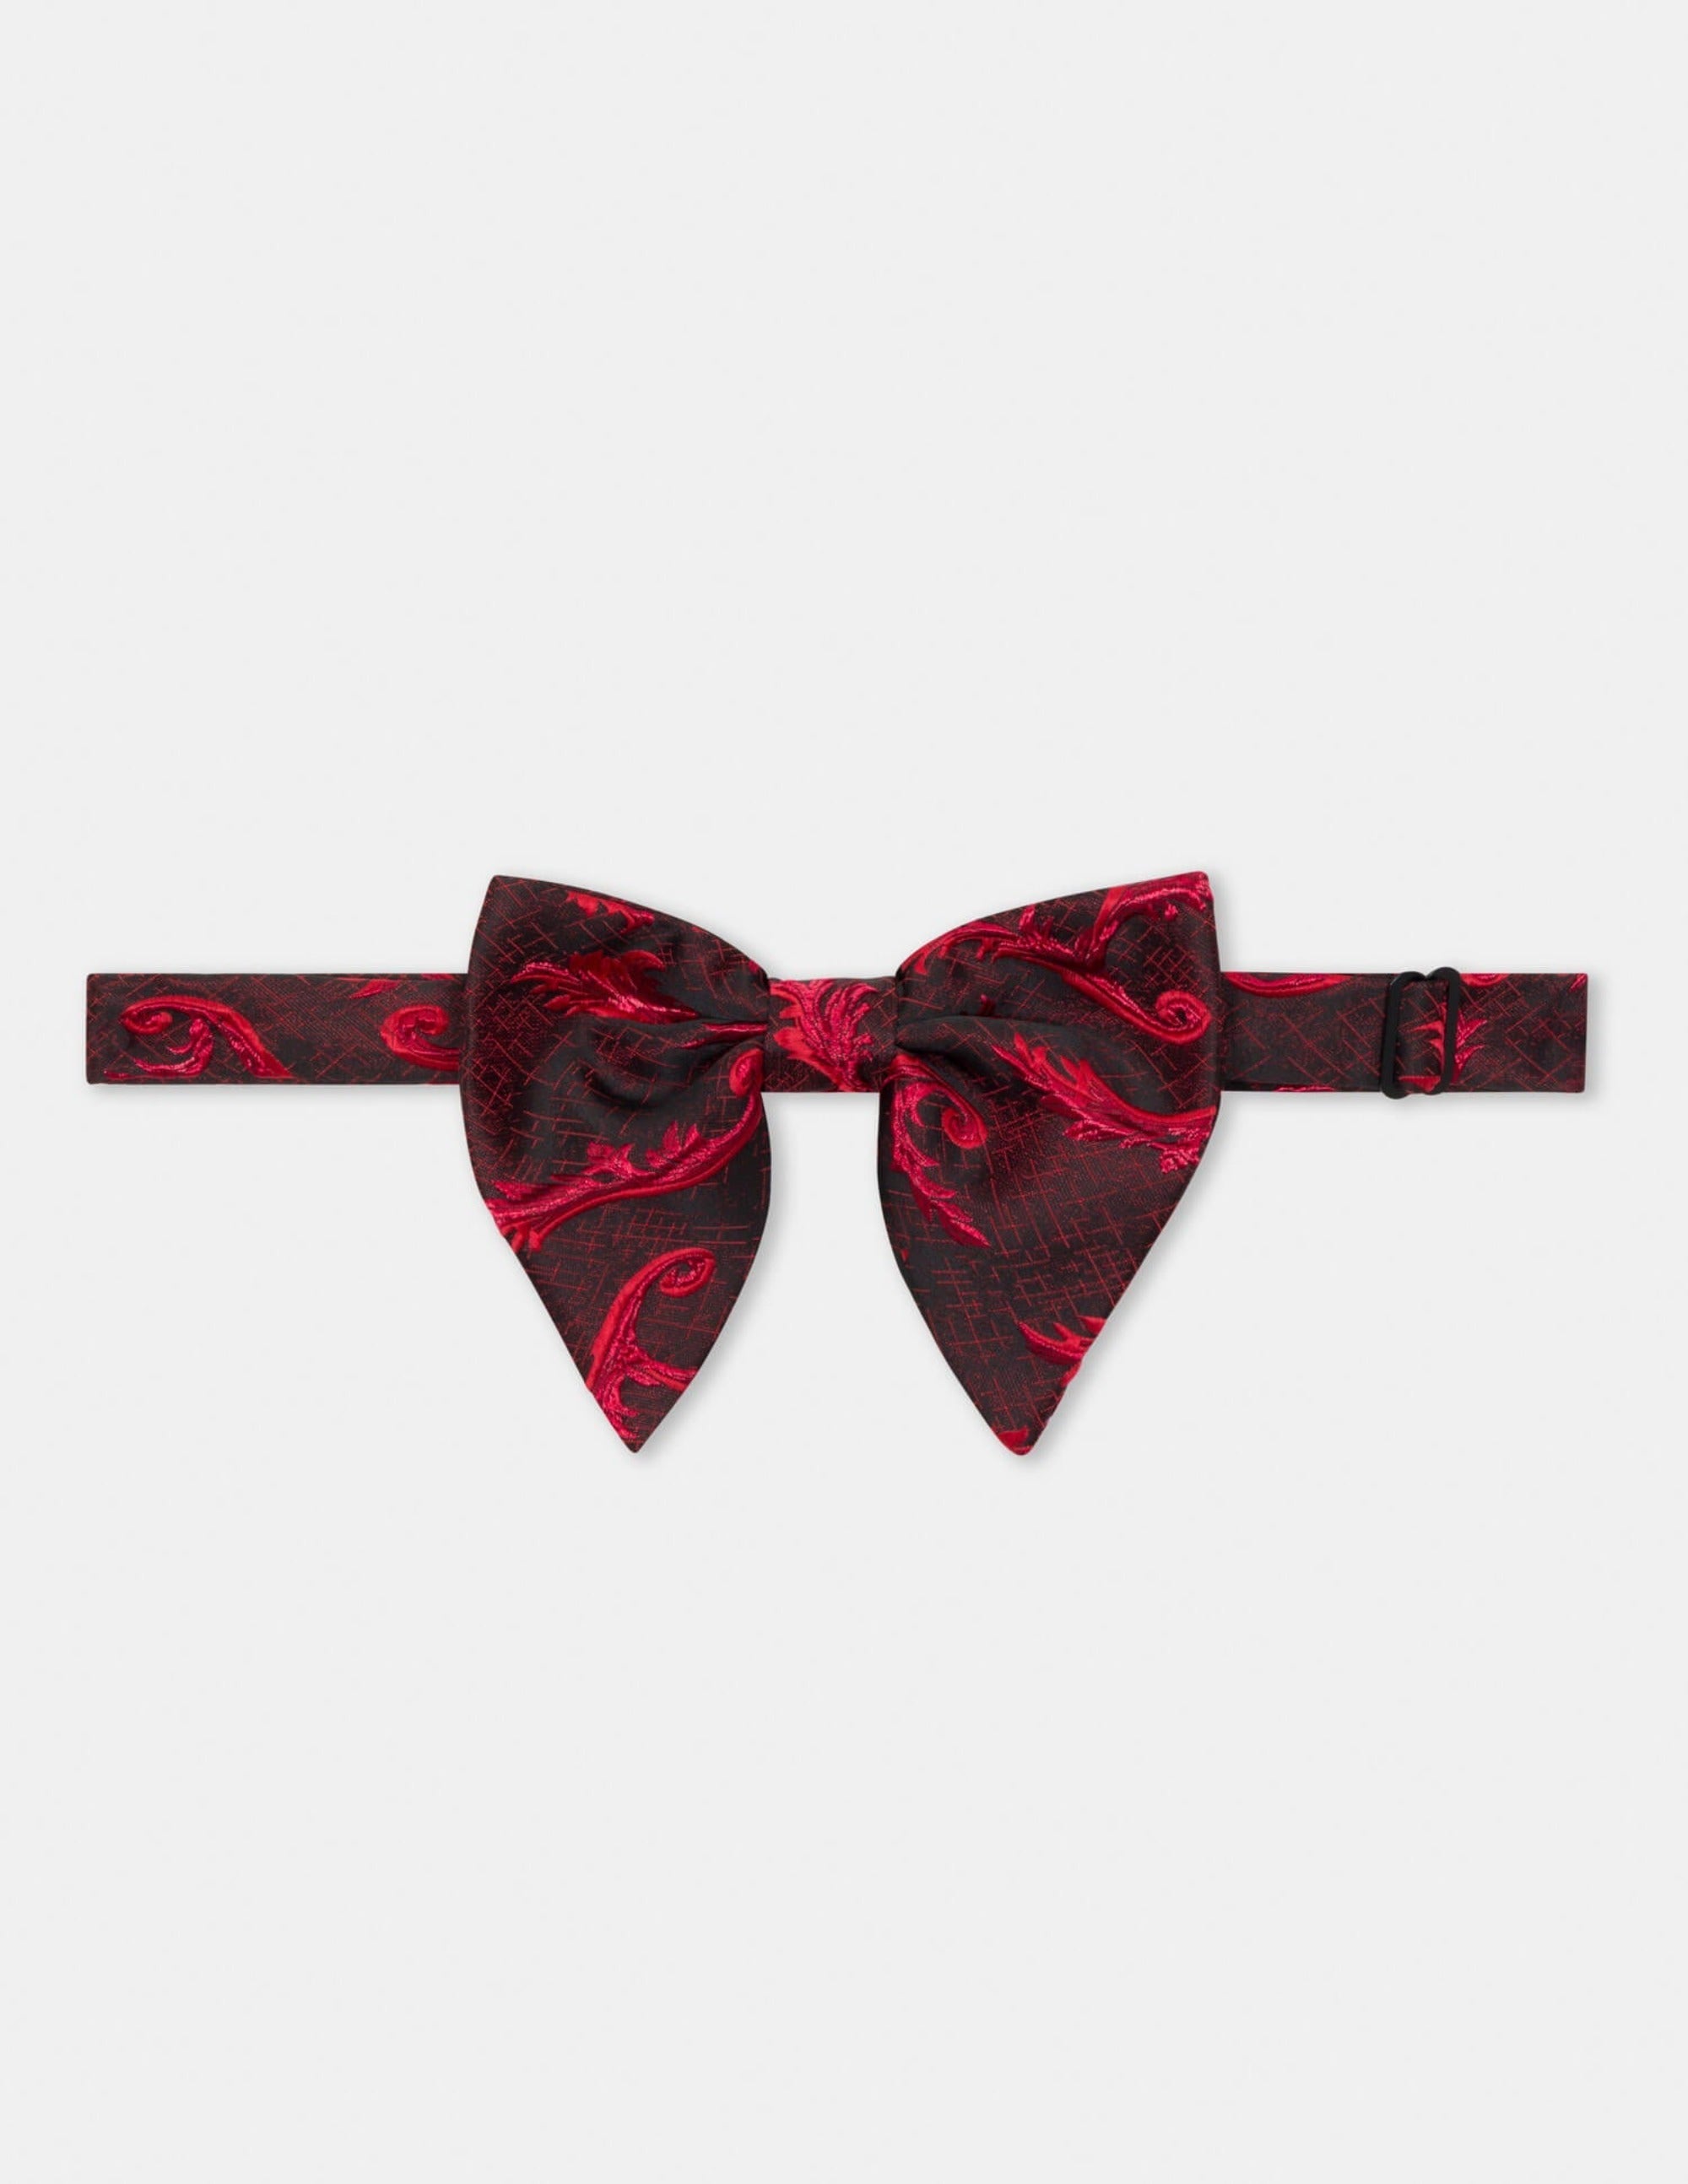 Black Red Bow Tie - Samir Bachkami